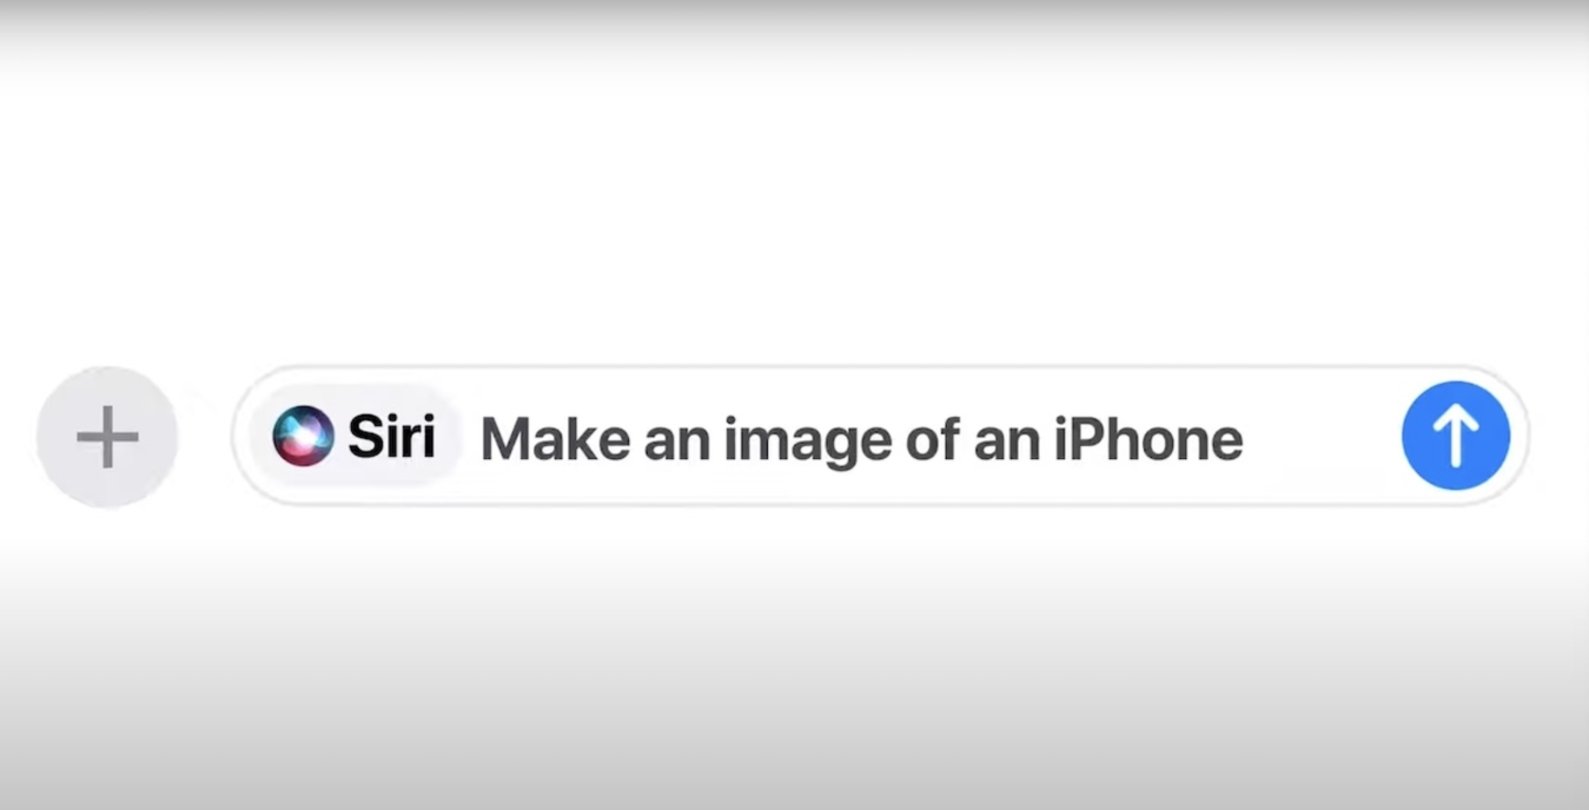 Pedirle a Siri que haga una imagen mediante el uso de IA